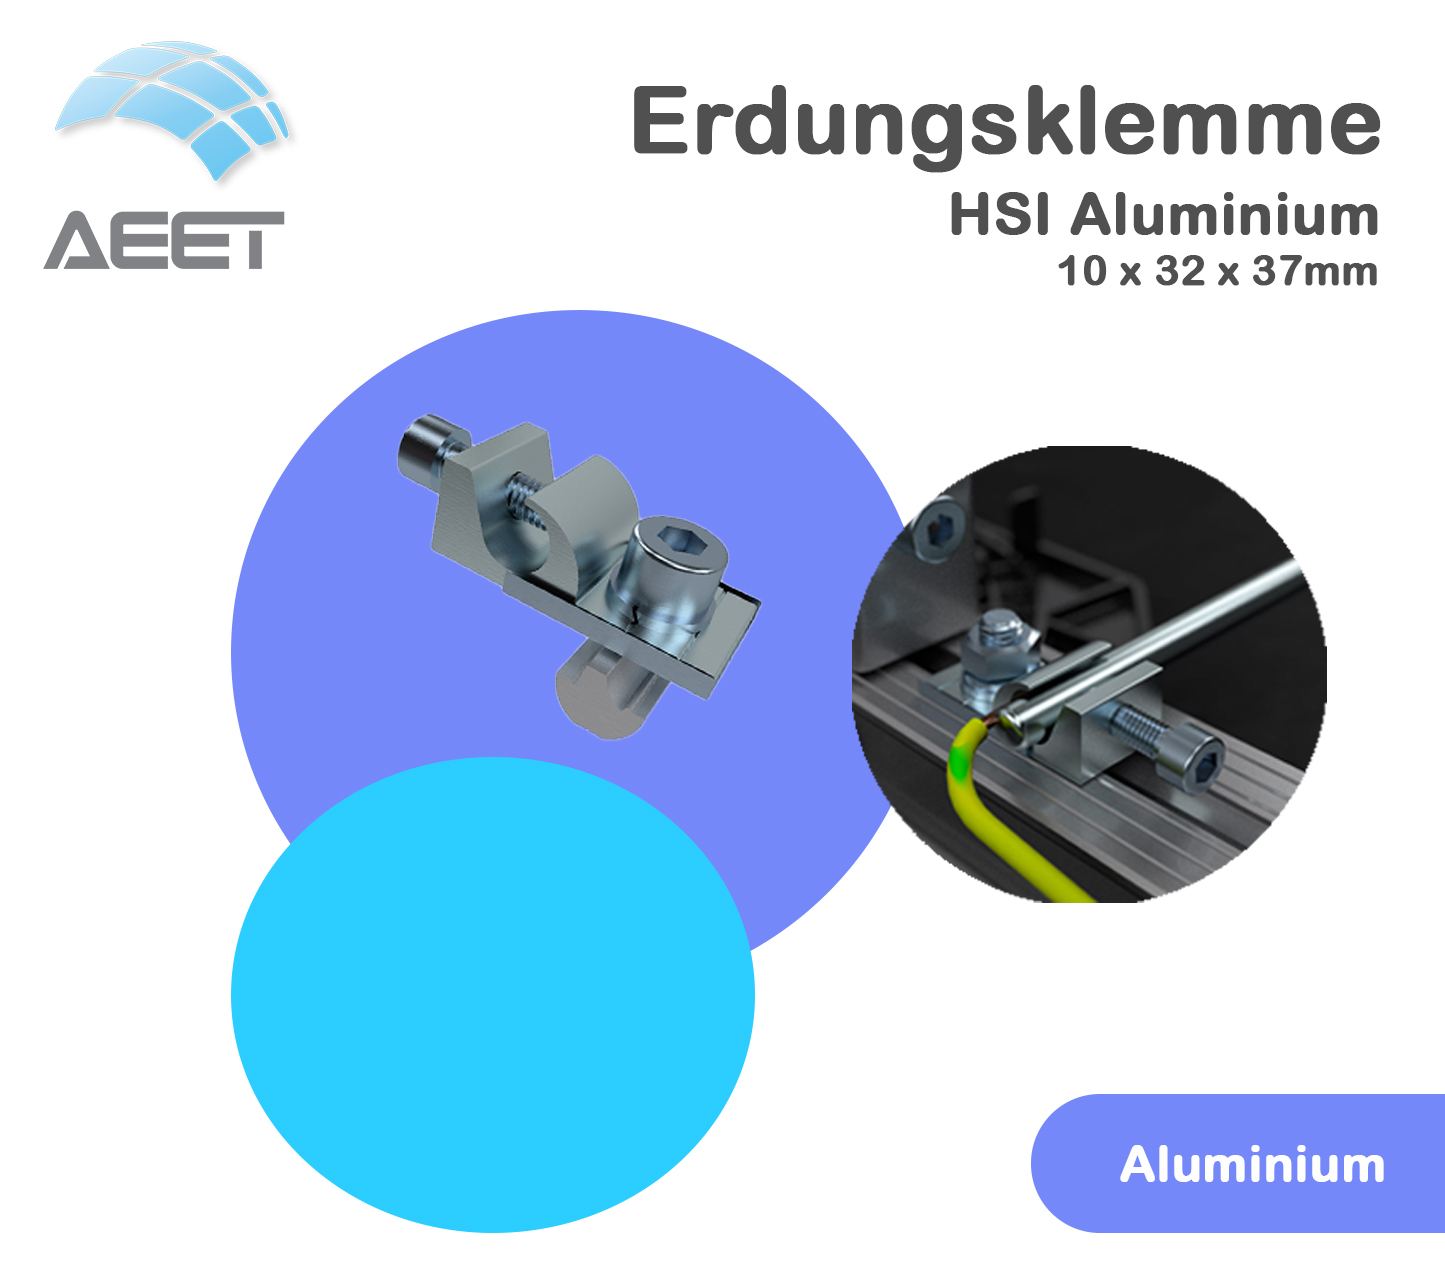 Erdungsklemme HSI Aluminium 10 x 32 x 37mm